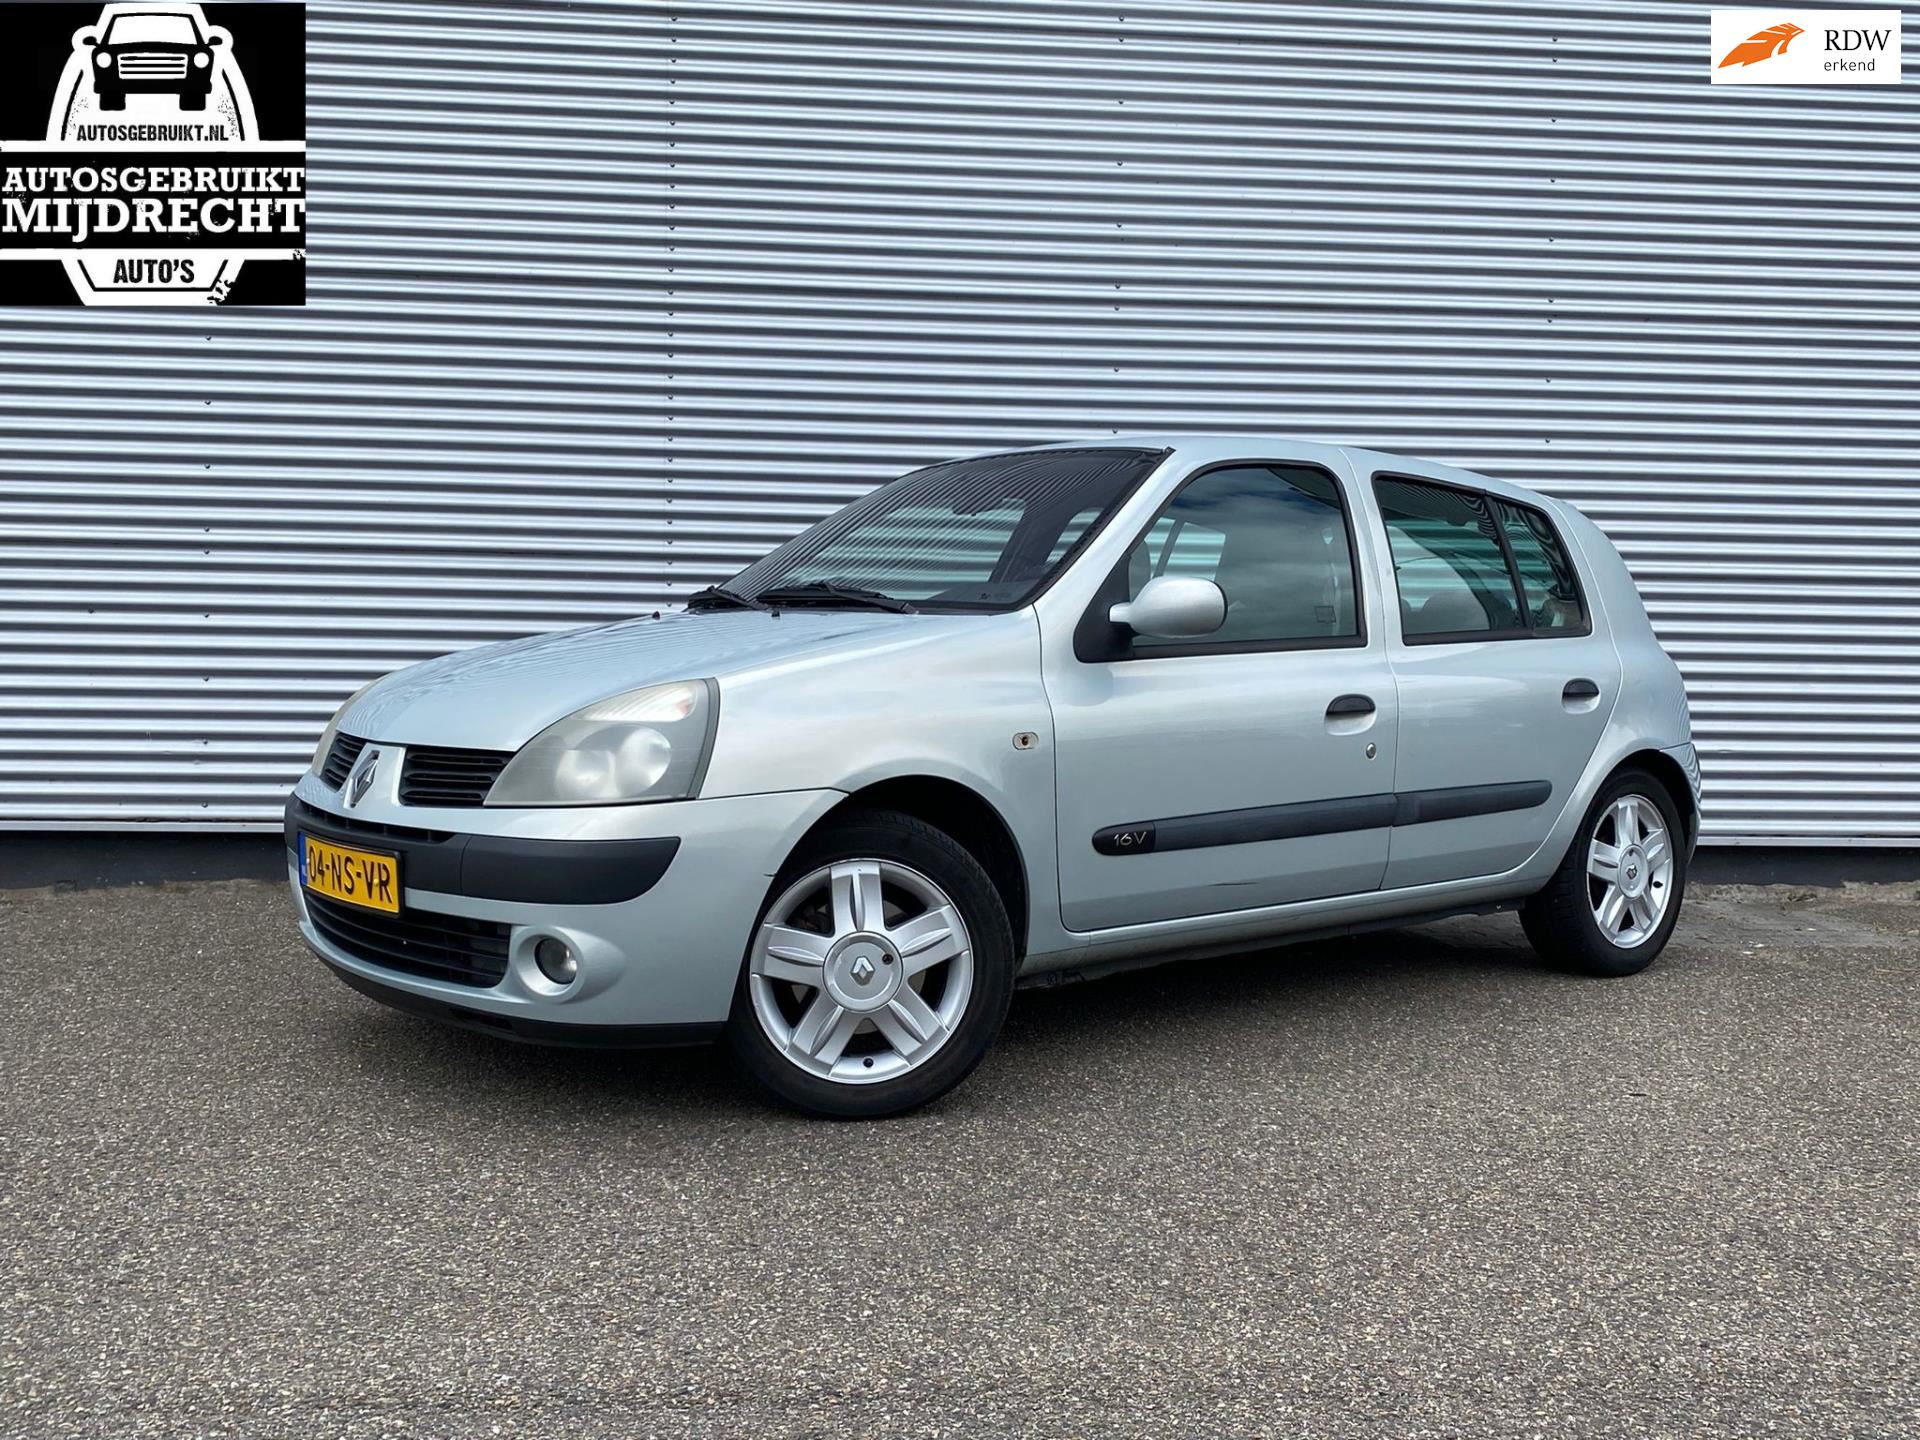 Renault Clio occasion - Autosgebruikt Mijdrecht